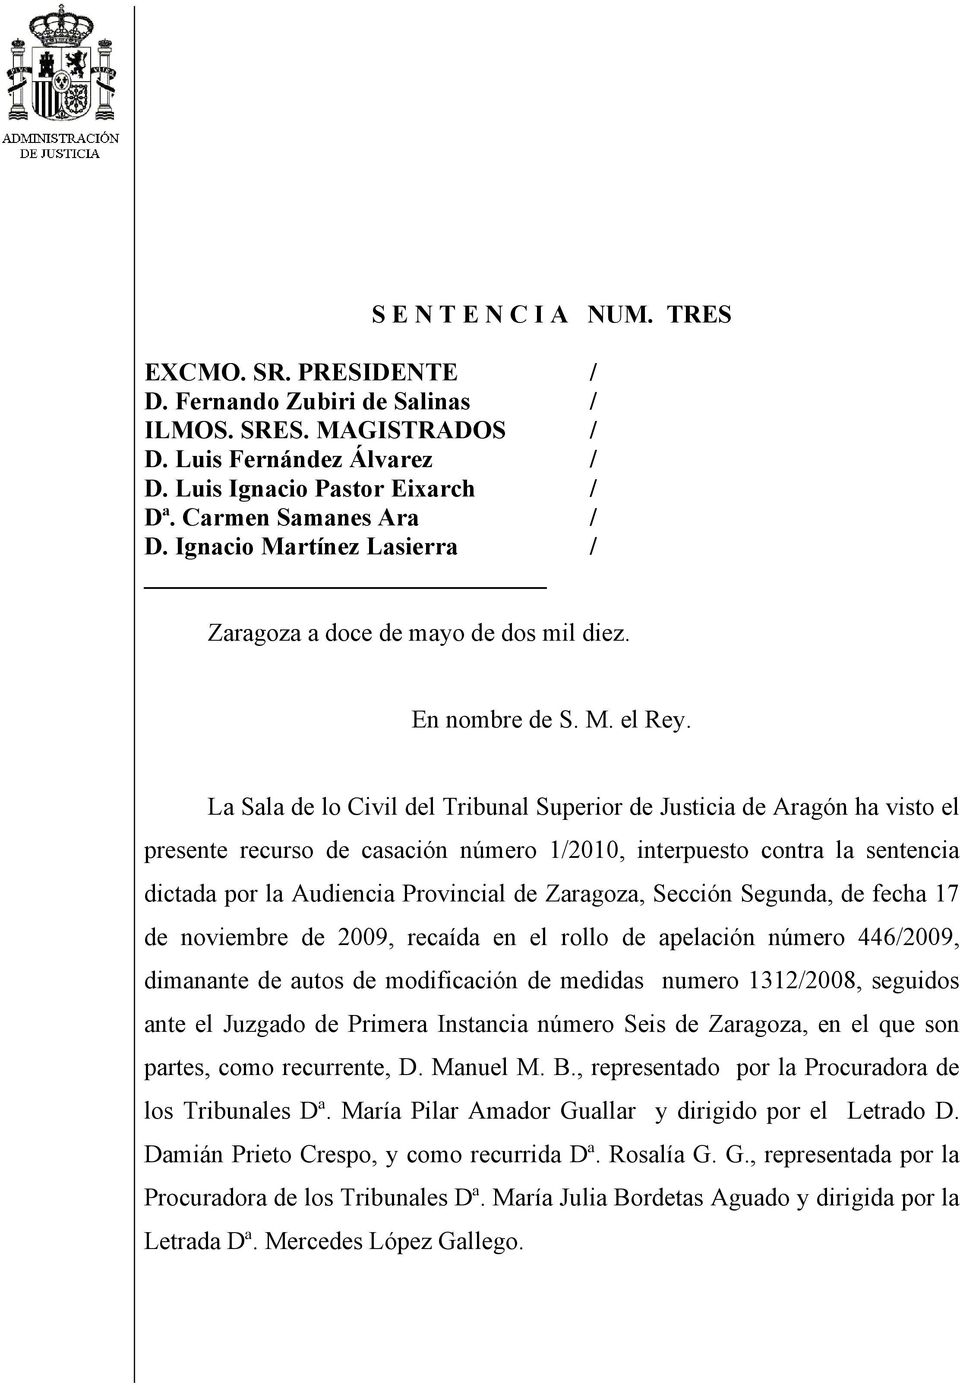 La Sala de lo Civil del Tribunal Superior de Justicia de Aragón ha visto el presente recurso de casación número 1/2010, interpuesto contra la sentencia dictada por la Audiencia Provincial de